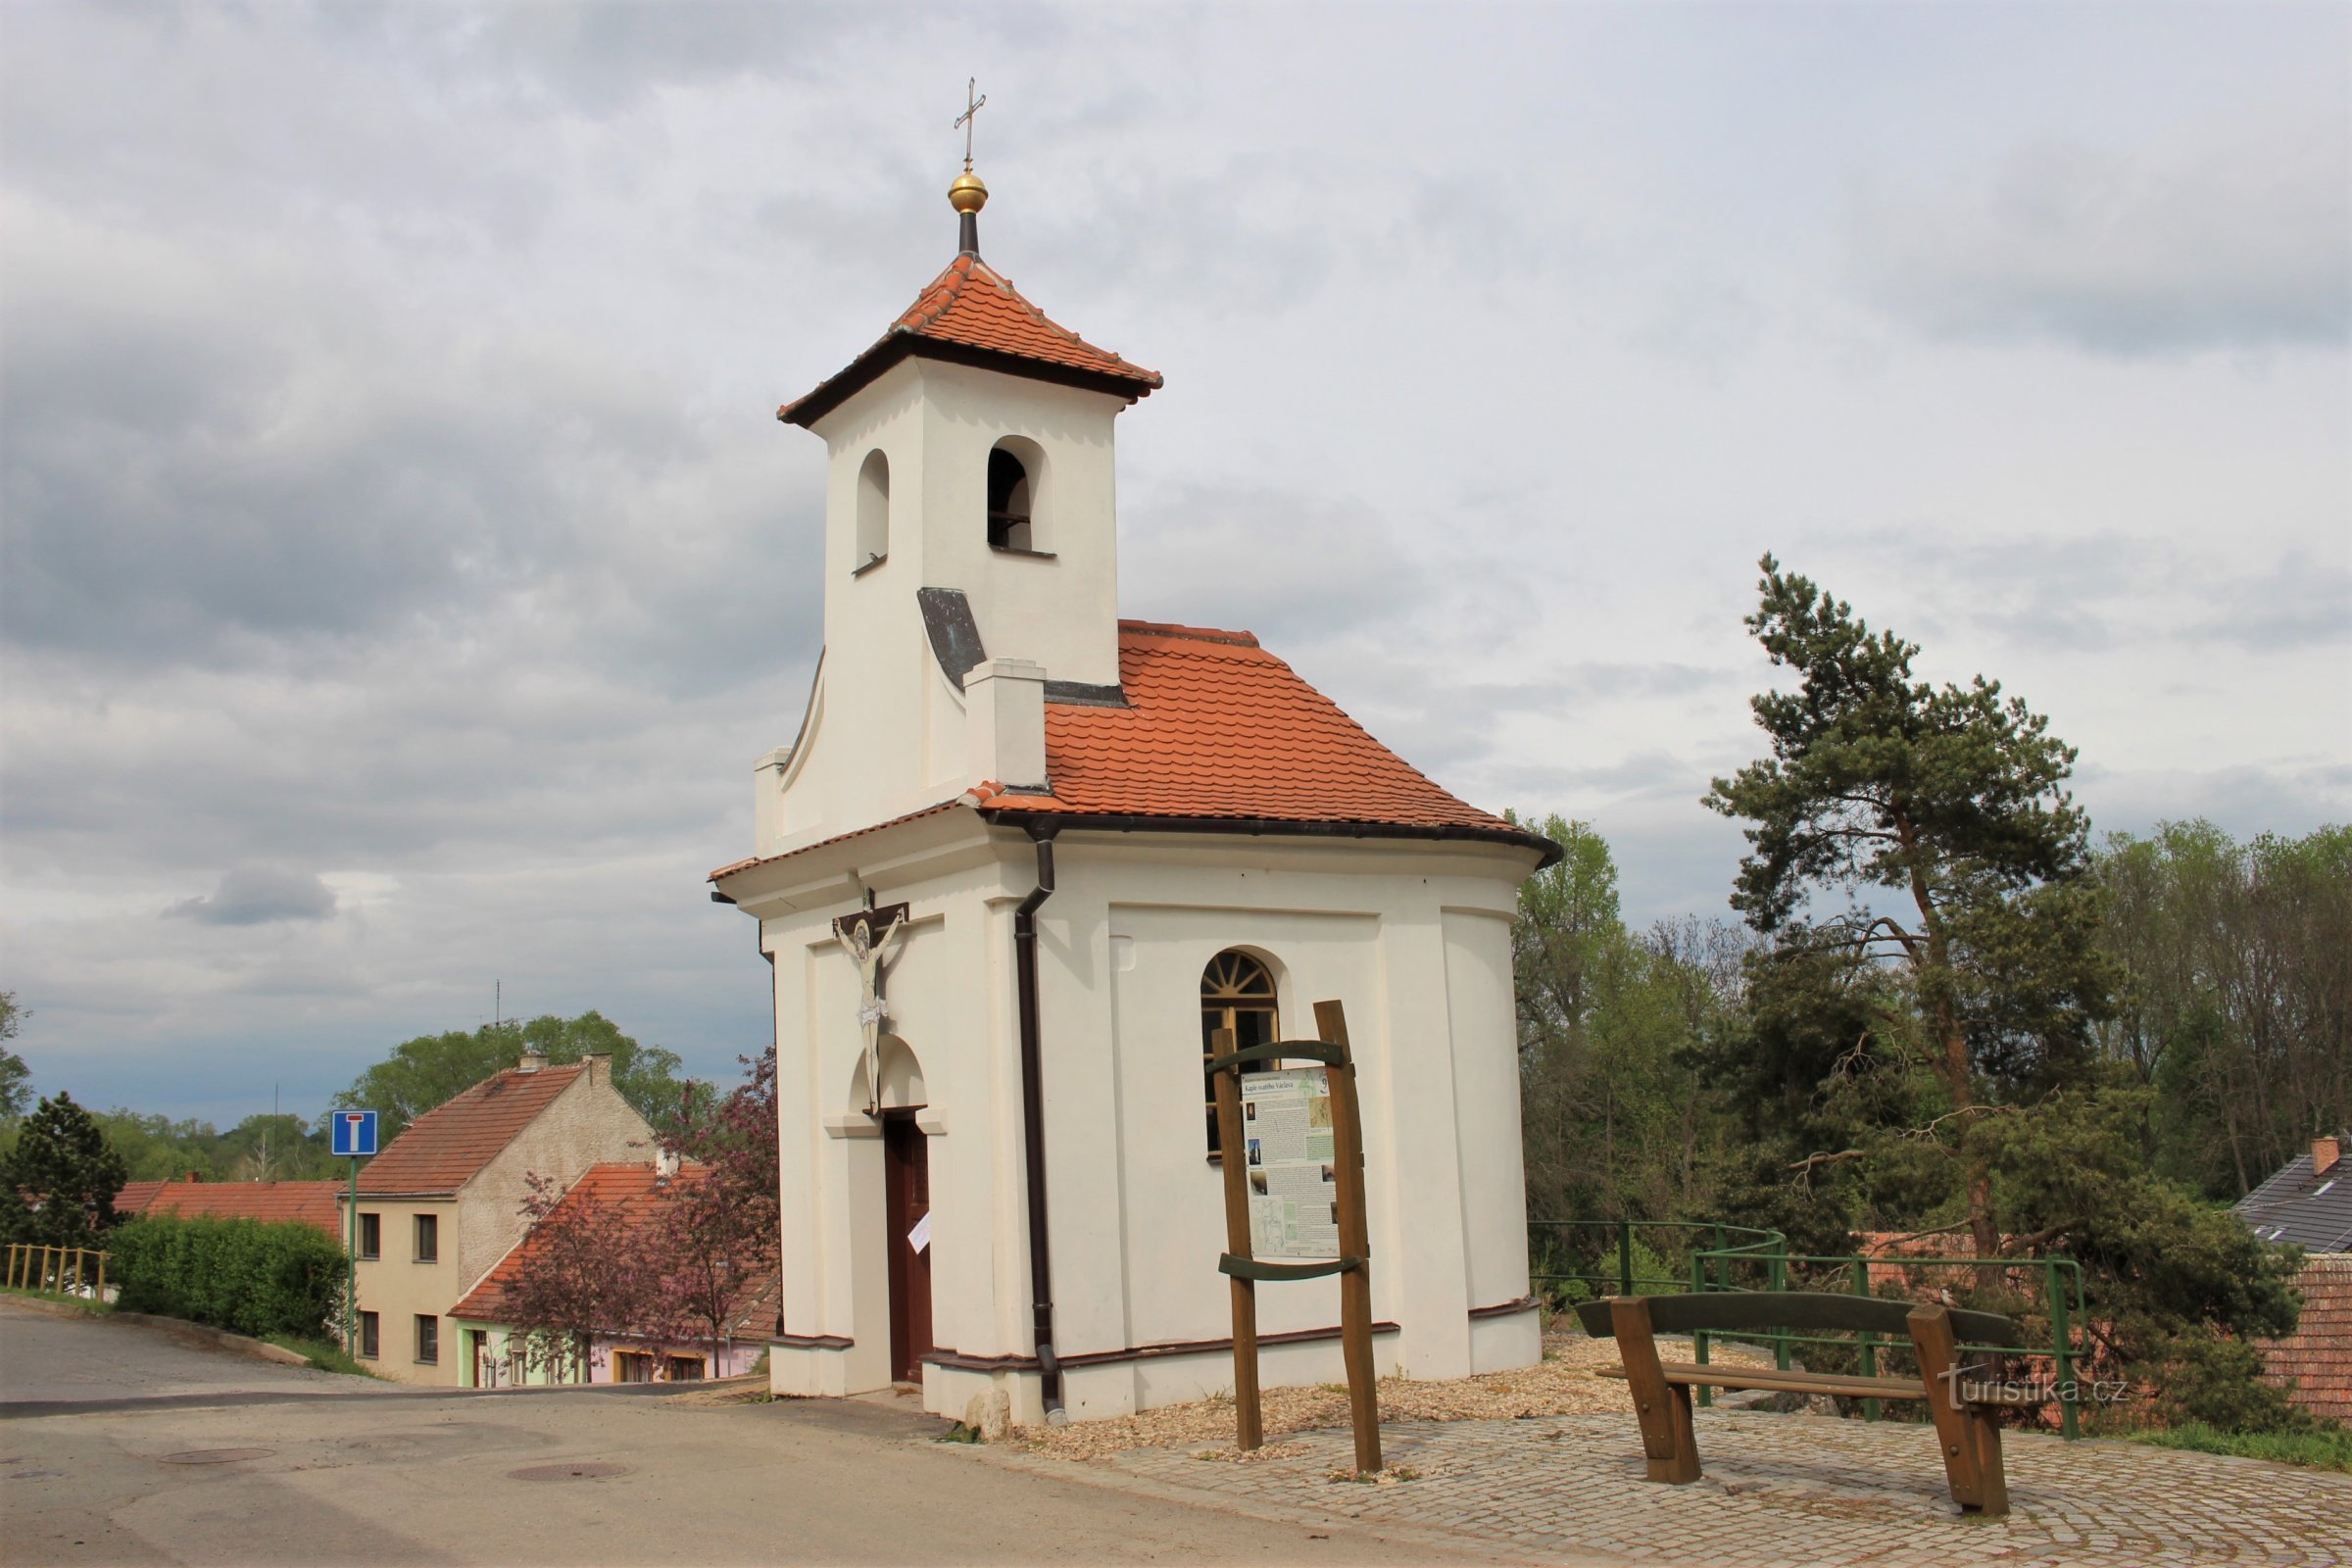 Kapel van St. Václav na de reconstructie en wijziging van de omgeving